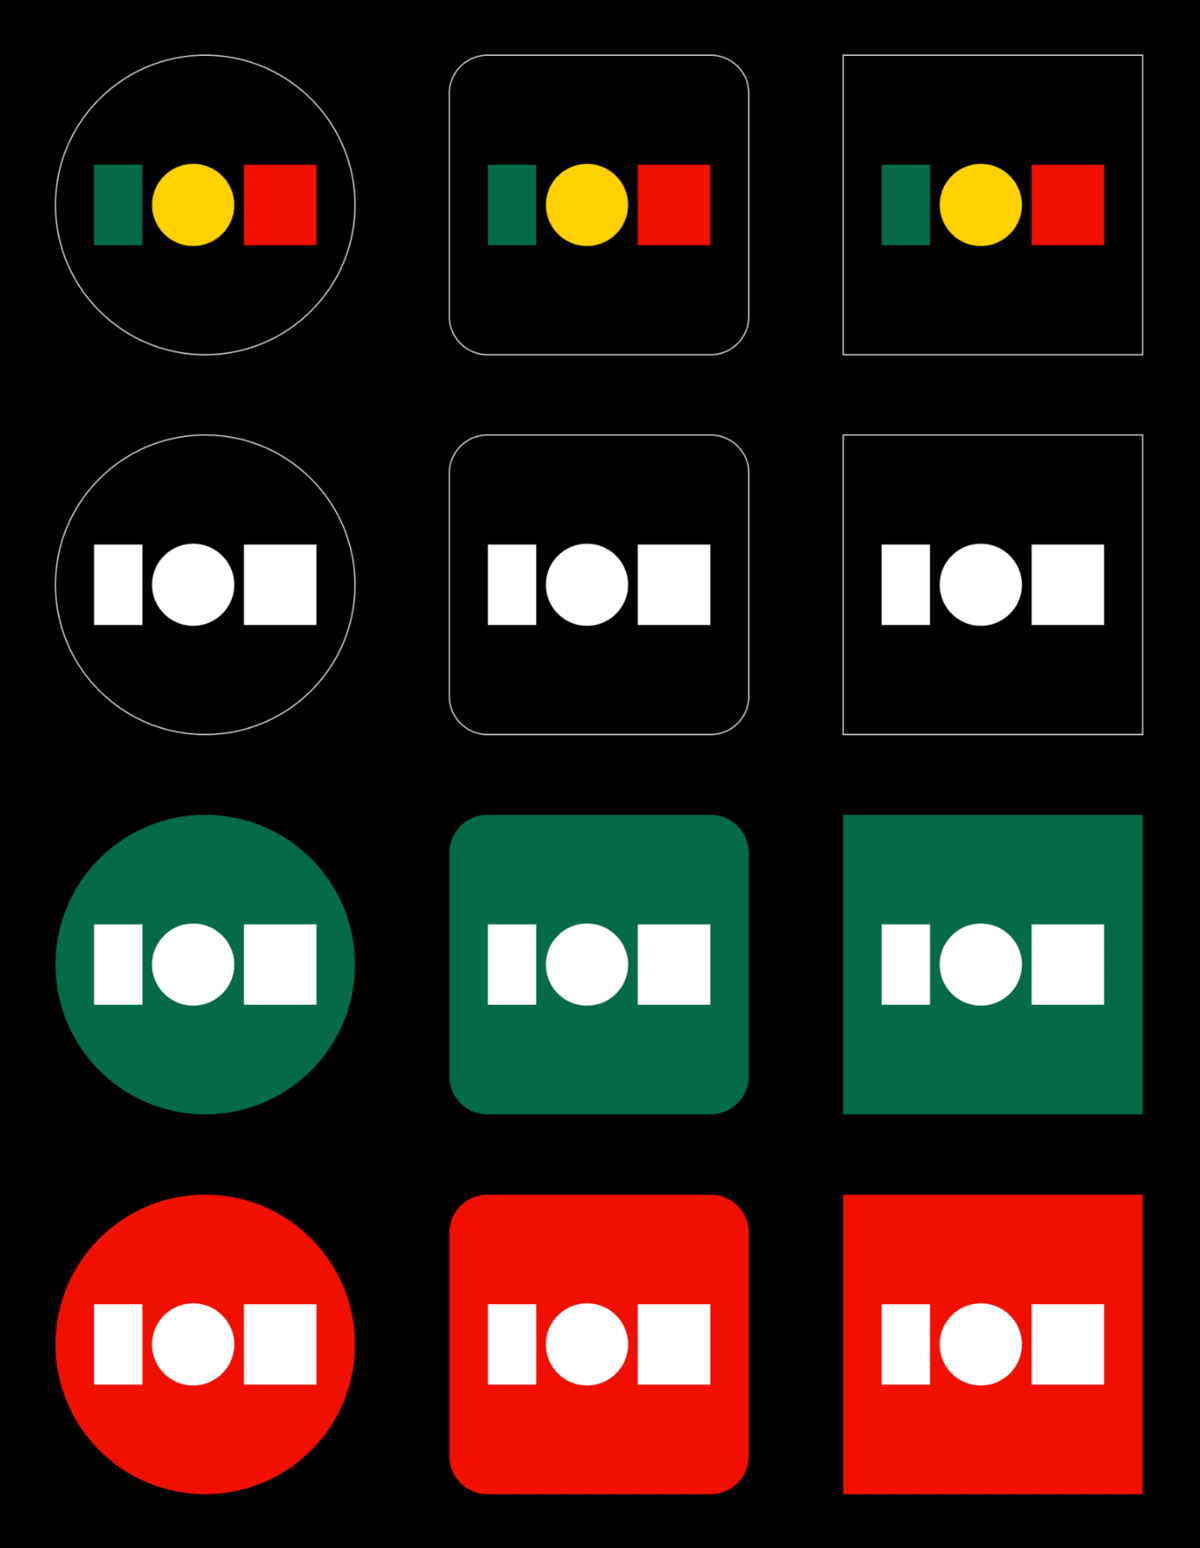 葡萄牙政府設計了一個極簡的新標誌 11